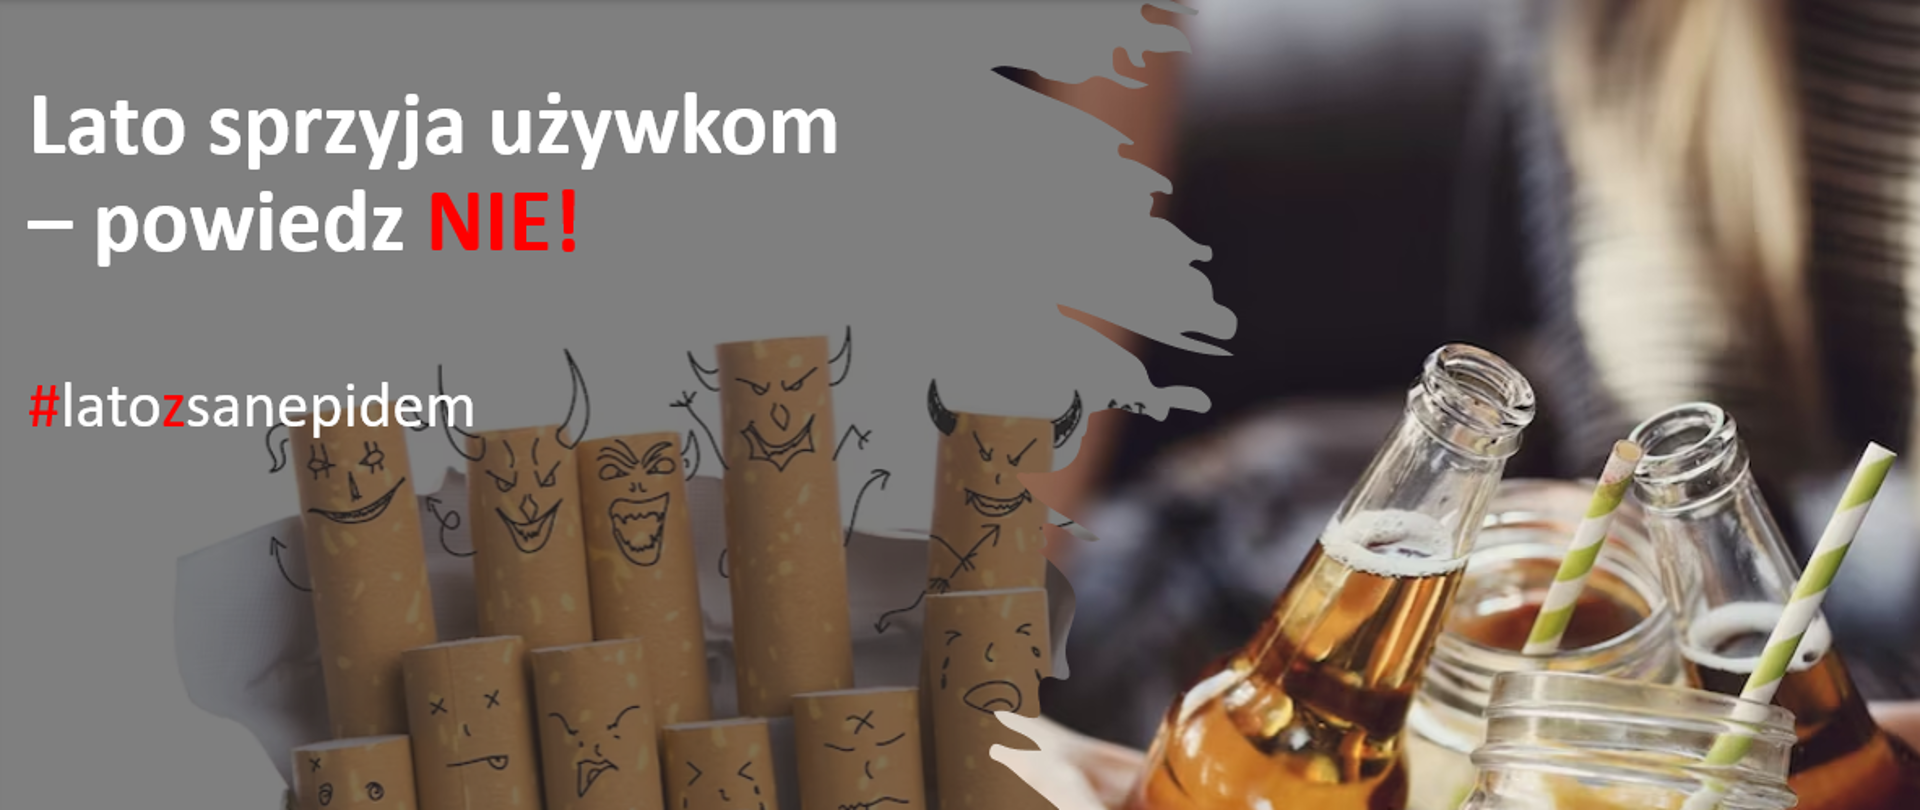 grafika zawiera zdjęcie paczki papierosów, butelek z piwem oraz szklanek z napojami